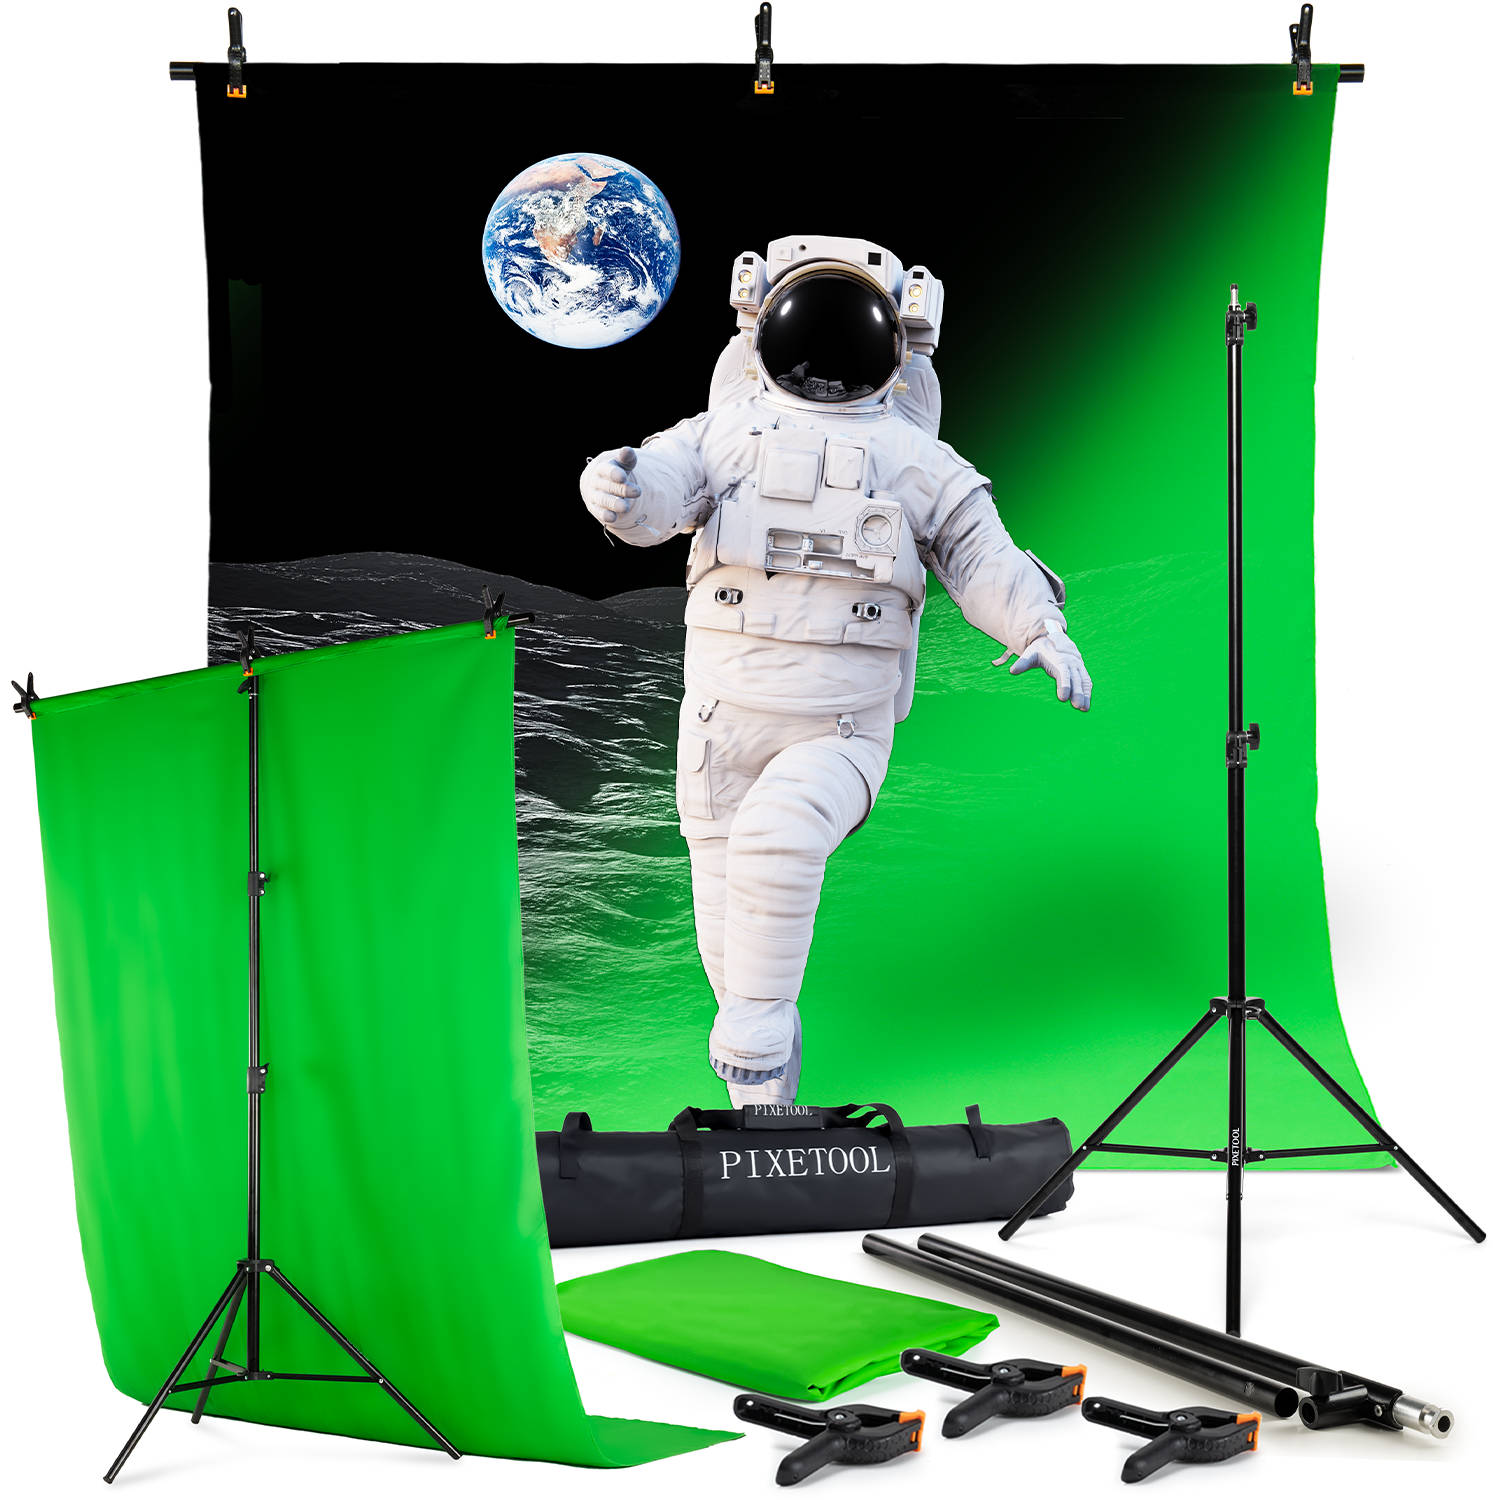 Pixetool - Green Screen Doek 260 x 150cm met achtergrondsysteem 2,6 x 1,5m - Achtergronddoek - Fotostudio - Green Screen Studio - Inclusief 3 klemmen